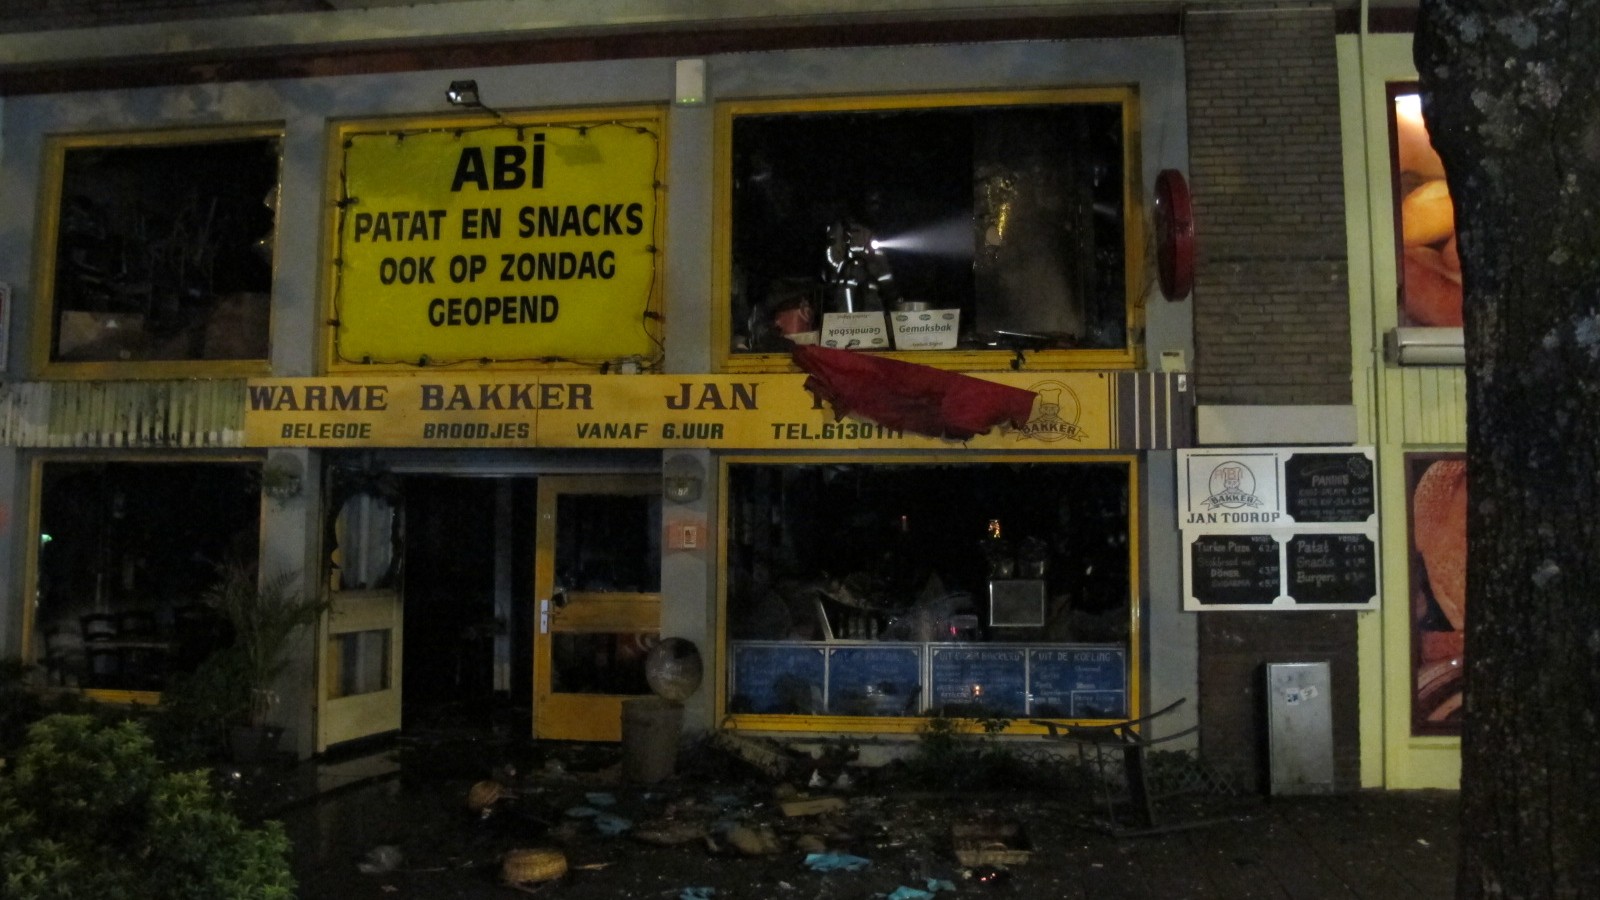 Felle brand verwoest winkel van bakker Abi